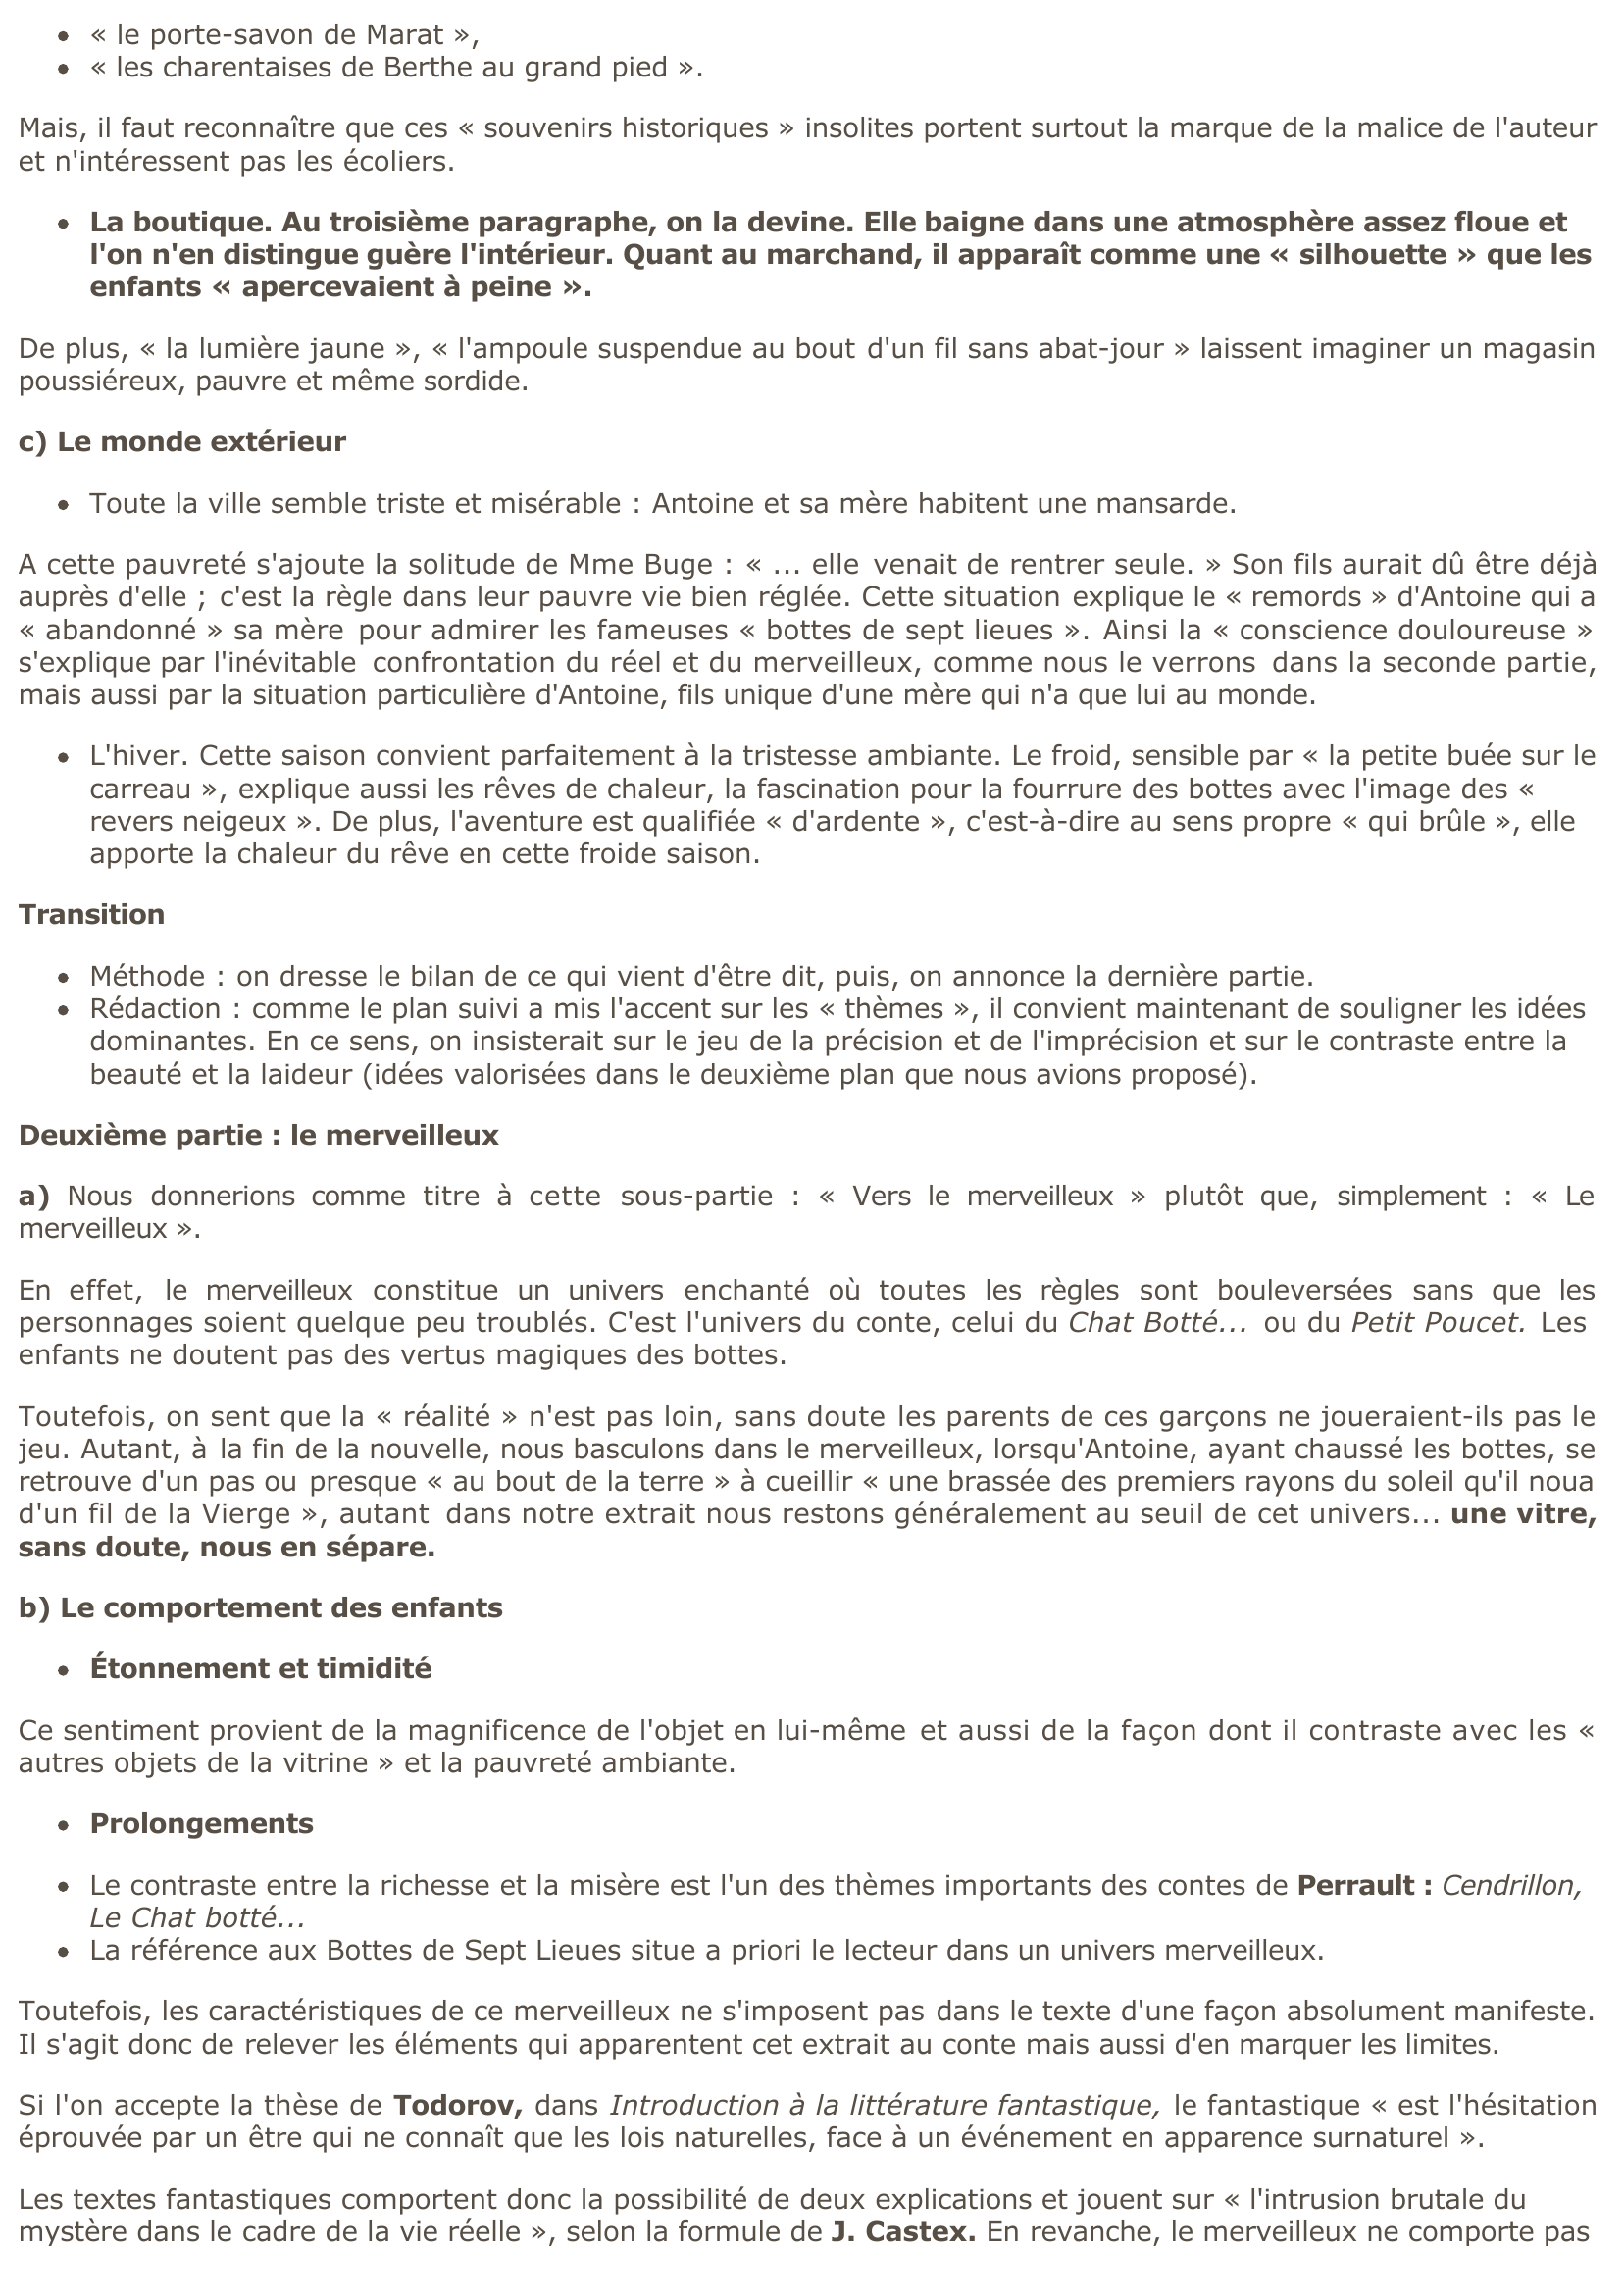 Prévisualisation du document Marcel AYMÉ,
Le Passe-Muraille, « Les Bottes de Sept Lieues »